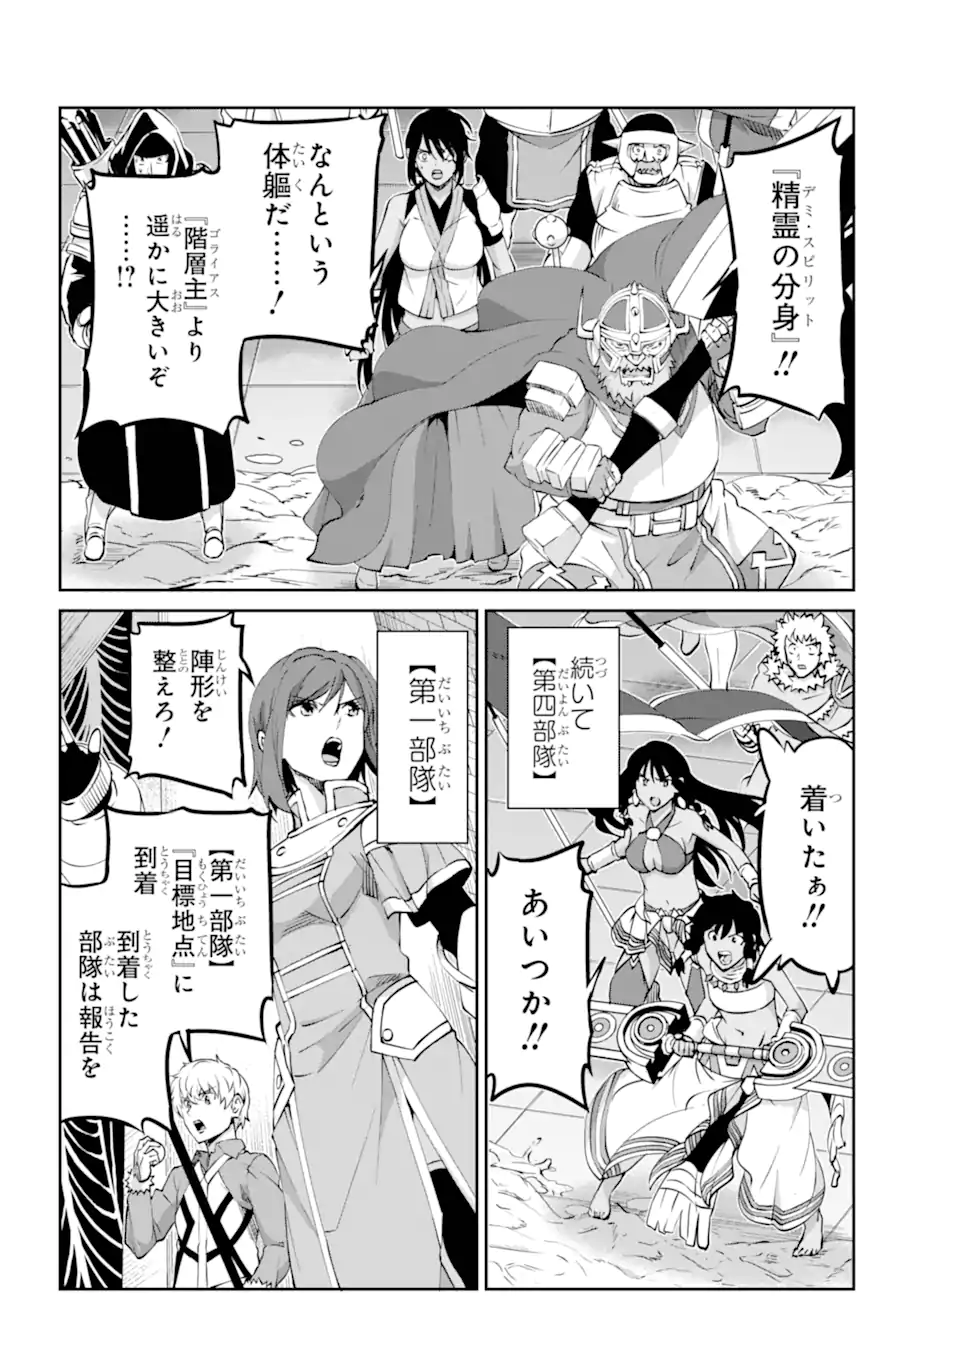 Dungeon ni Deai wo Motomeru no wa Machigatte Iru Darou ka Gaiden - Sword Oratoria - Chapter 118.1 - Page 11